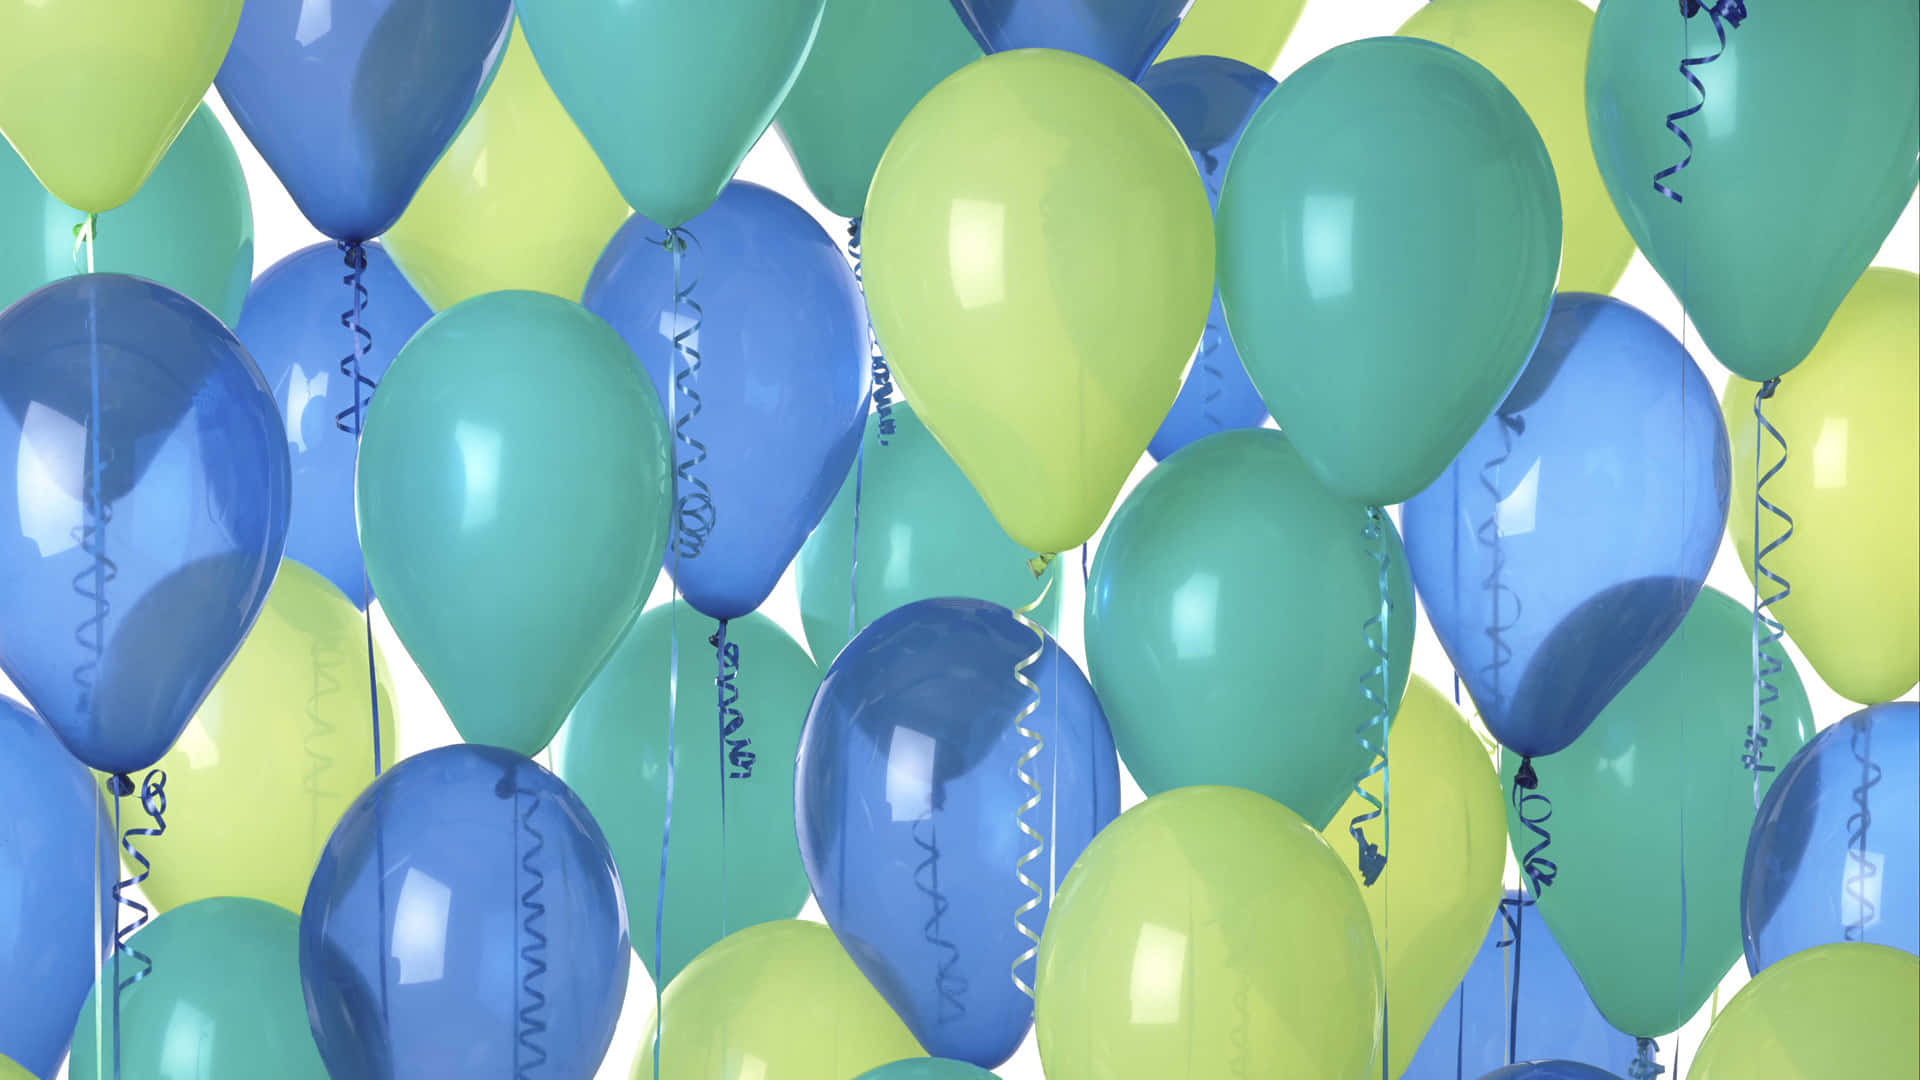 Balõesde Aniversário Em Tons De Azul E Verde, Imagem Estética De Papel De Parede Para Computador Ou Celular.